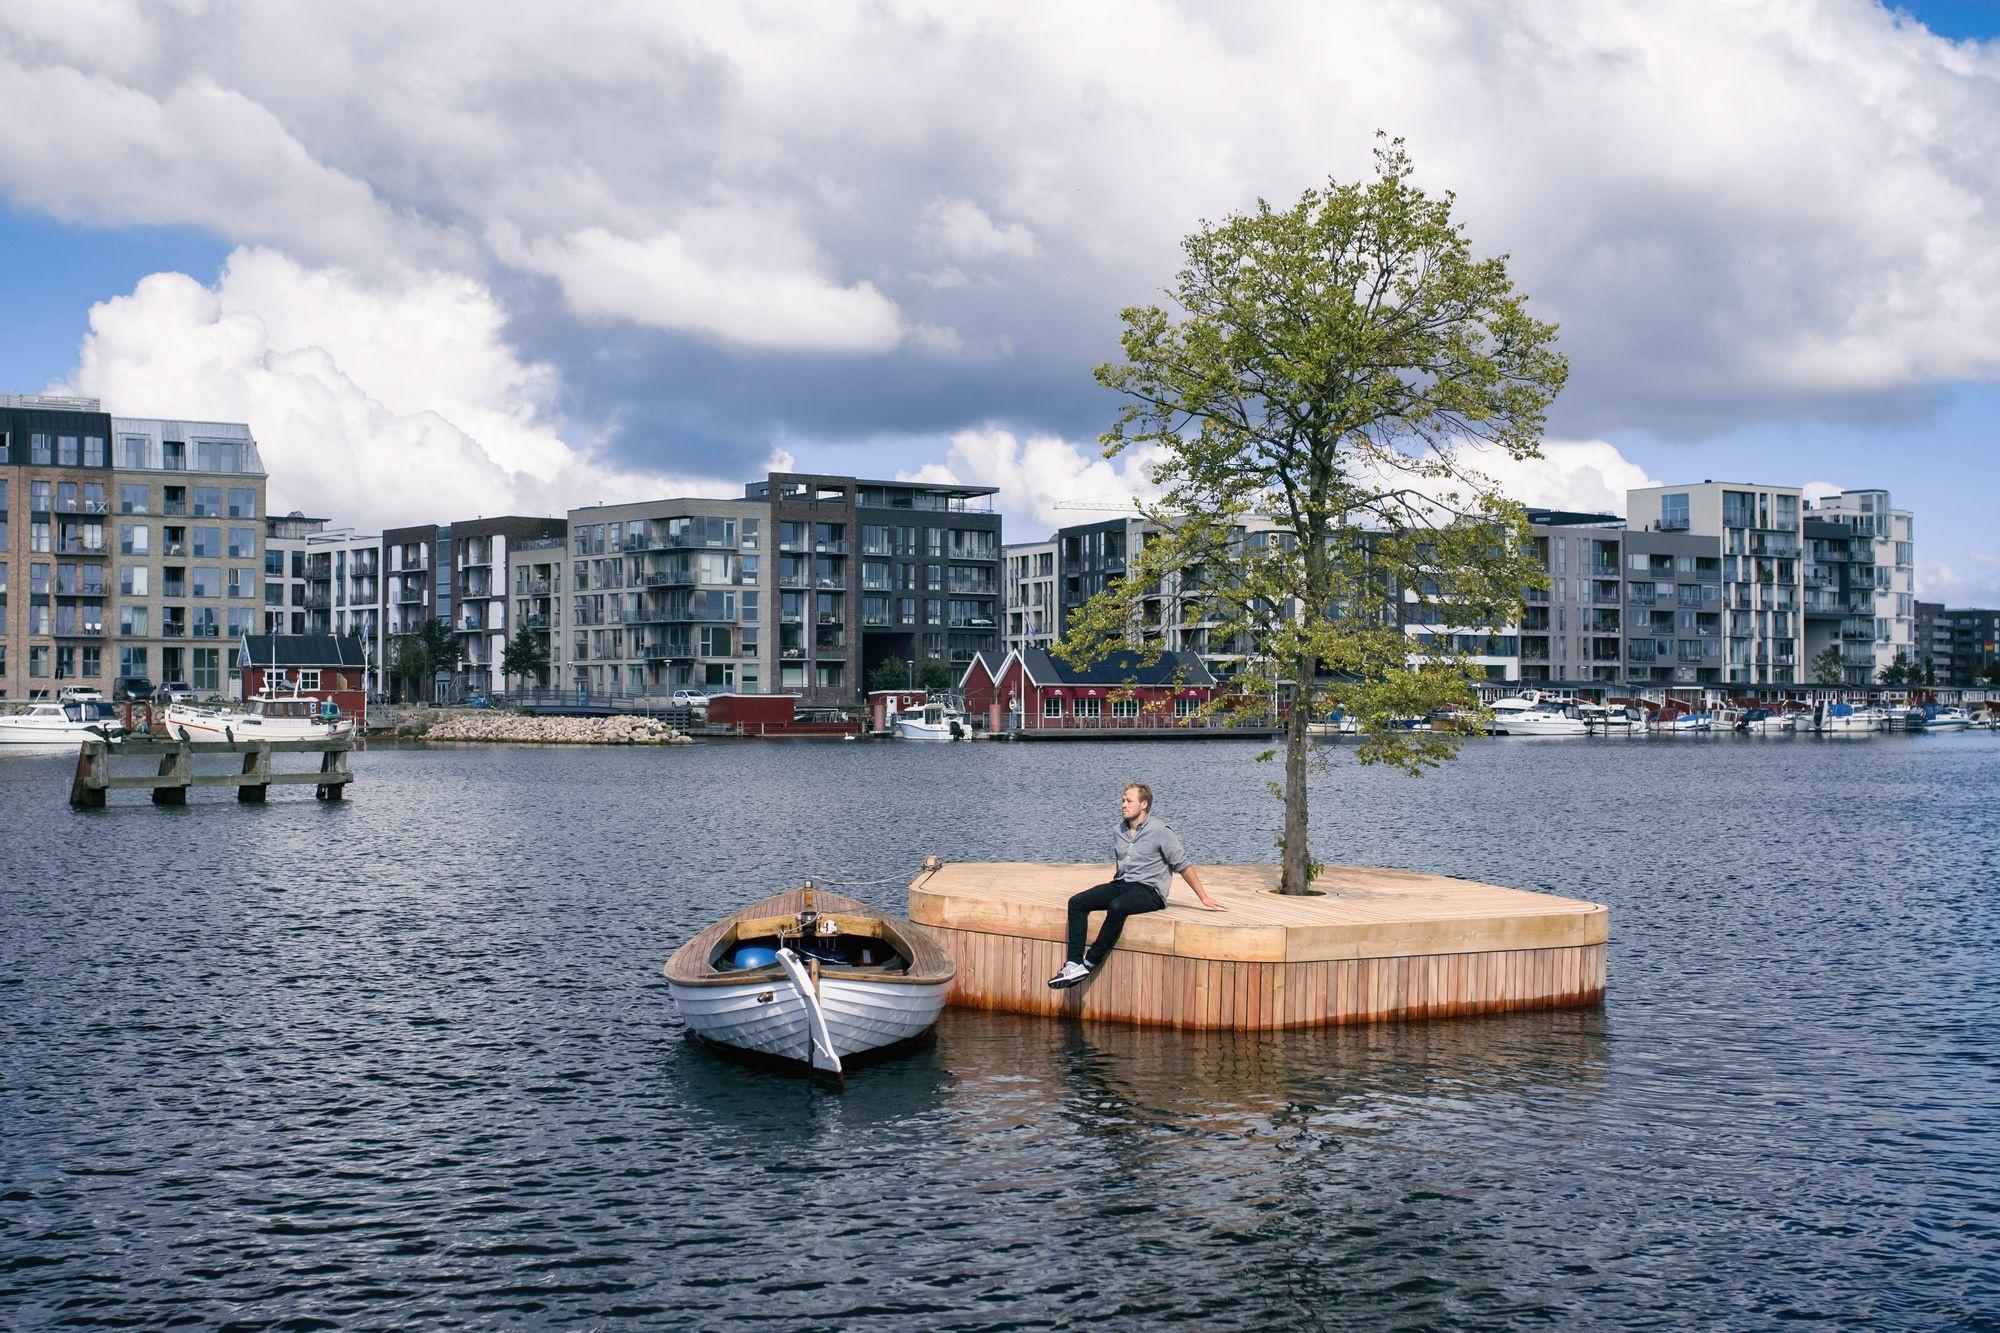 Toujours à l'état de prototype, ce projet d'îles artificielles dans le port de Copenhague devrait bientôt voir le jour.